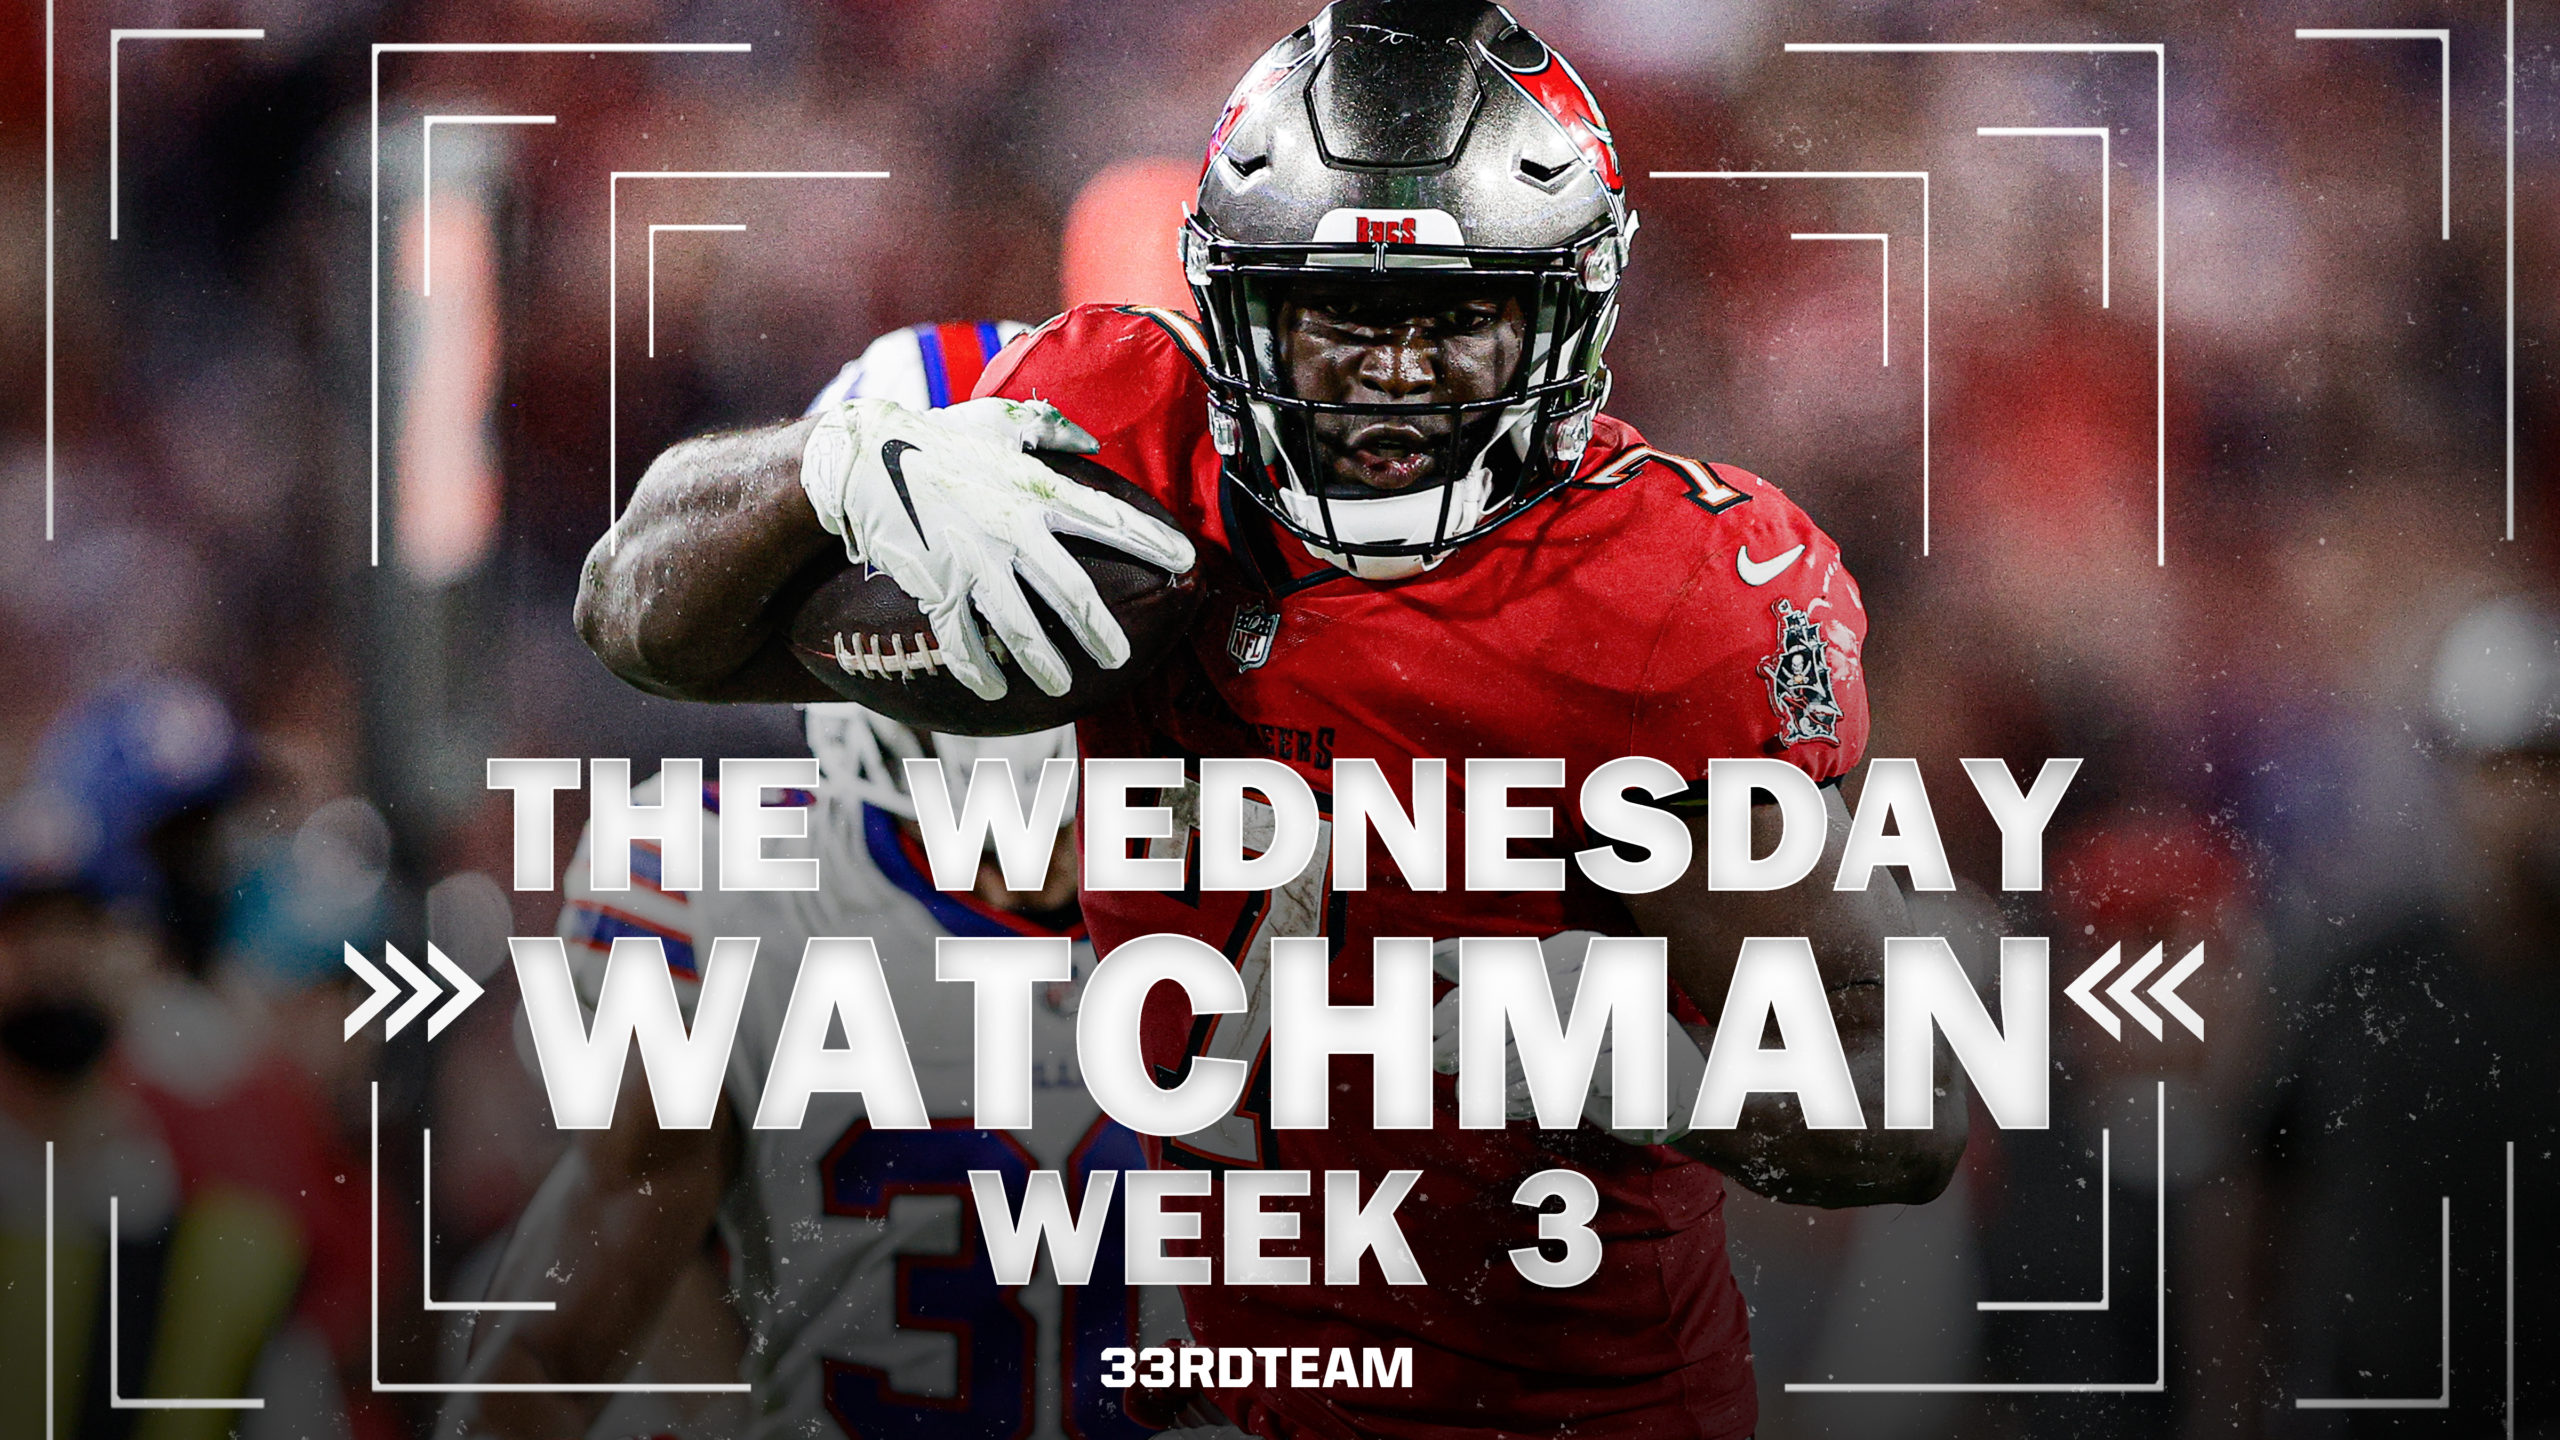 Week 3 Wednesday Watchman